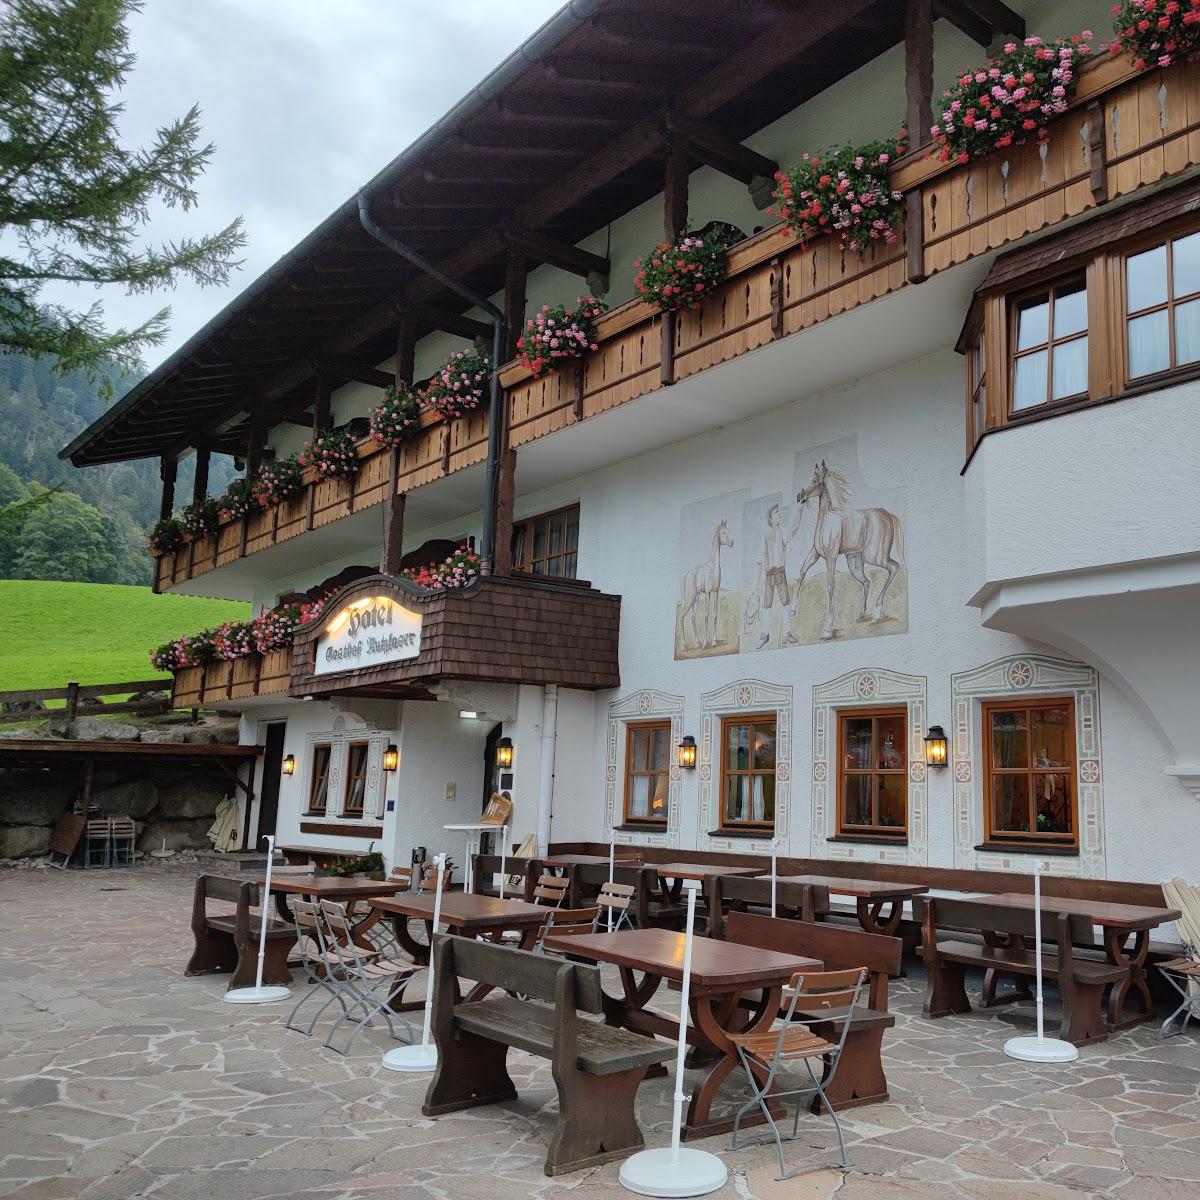 Restaurant "Hotel-Gasthof Nutzkaser" in Ramsau bei Berchtesgaden